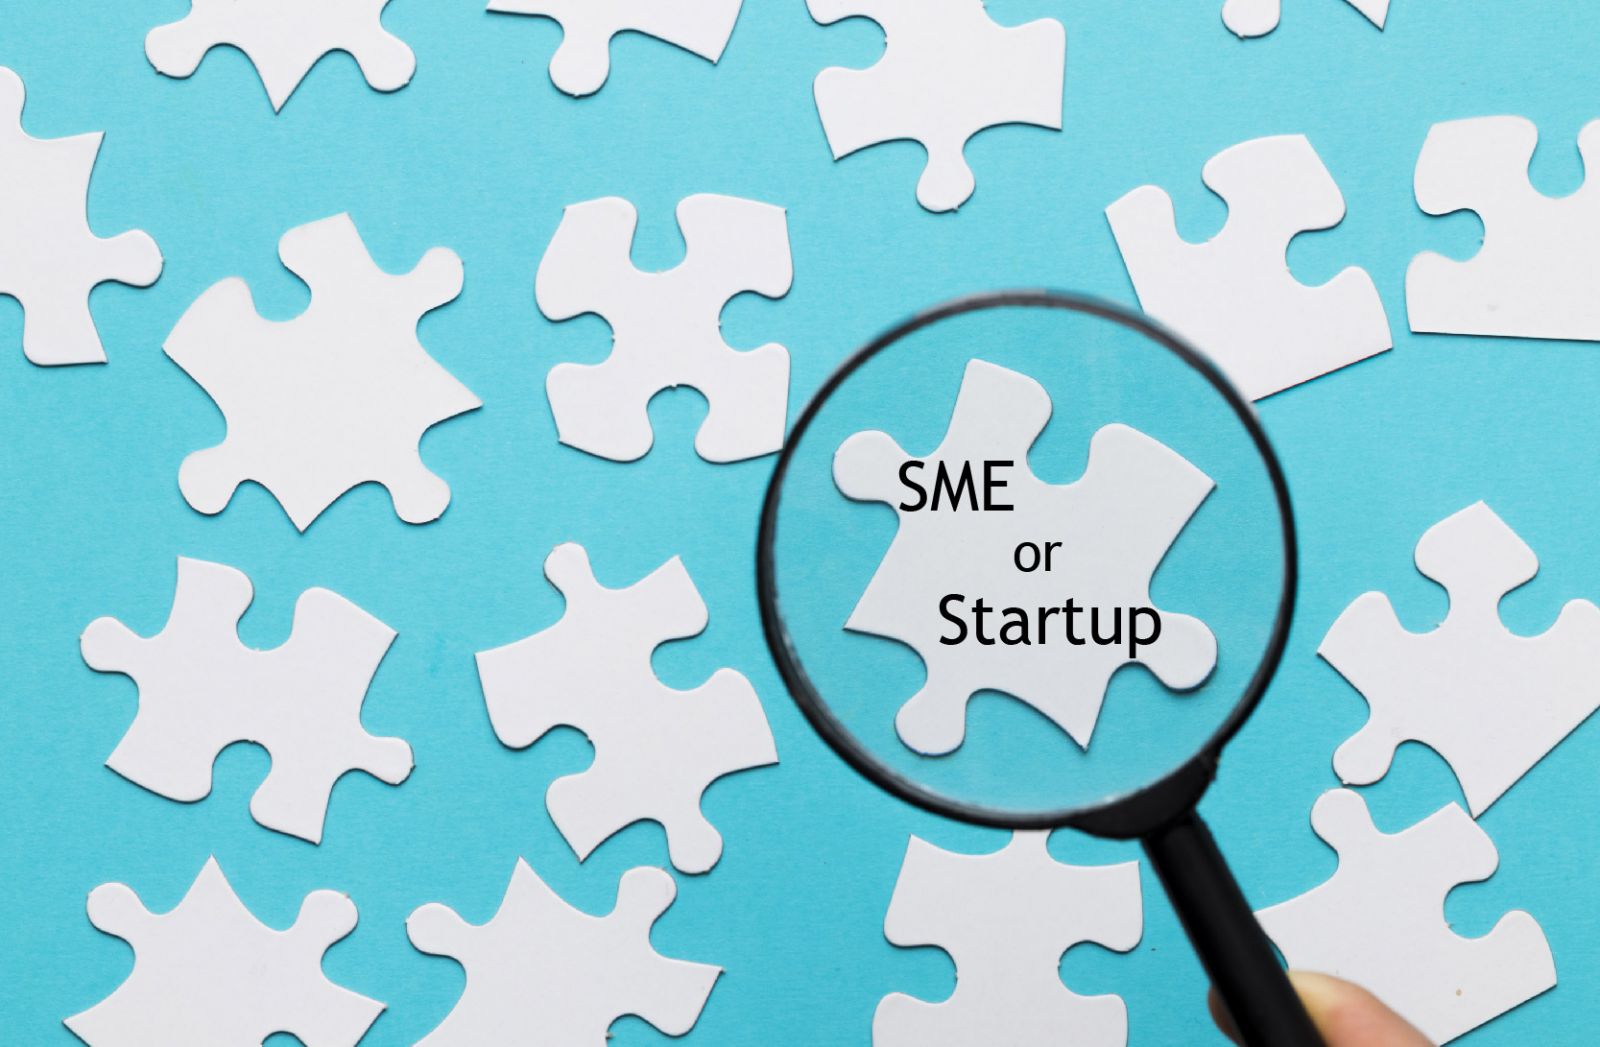 Trong thực tế, nhiều người có thể sẽ nhầm lẫn khái niệm giữa doanh nghiệp SME với Startup, tuy nhiên 2 khái niệm này hoàn toàn khác biệt. 